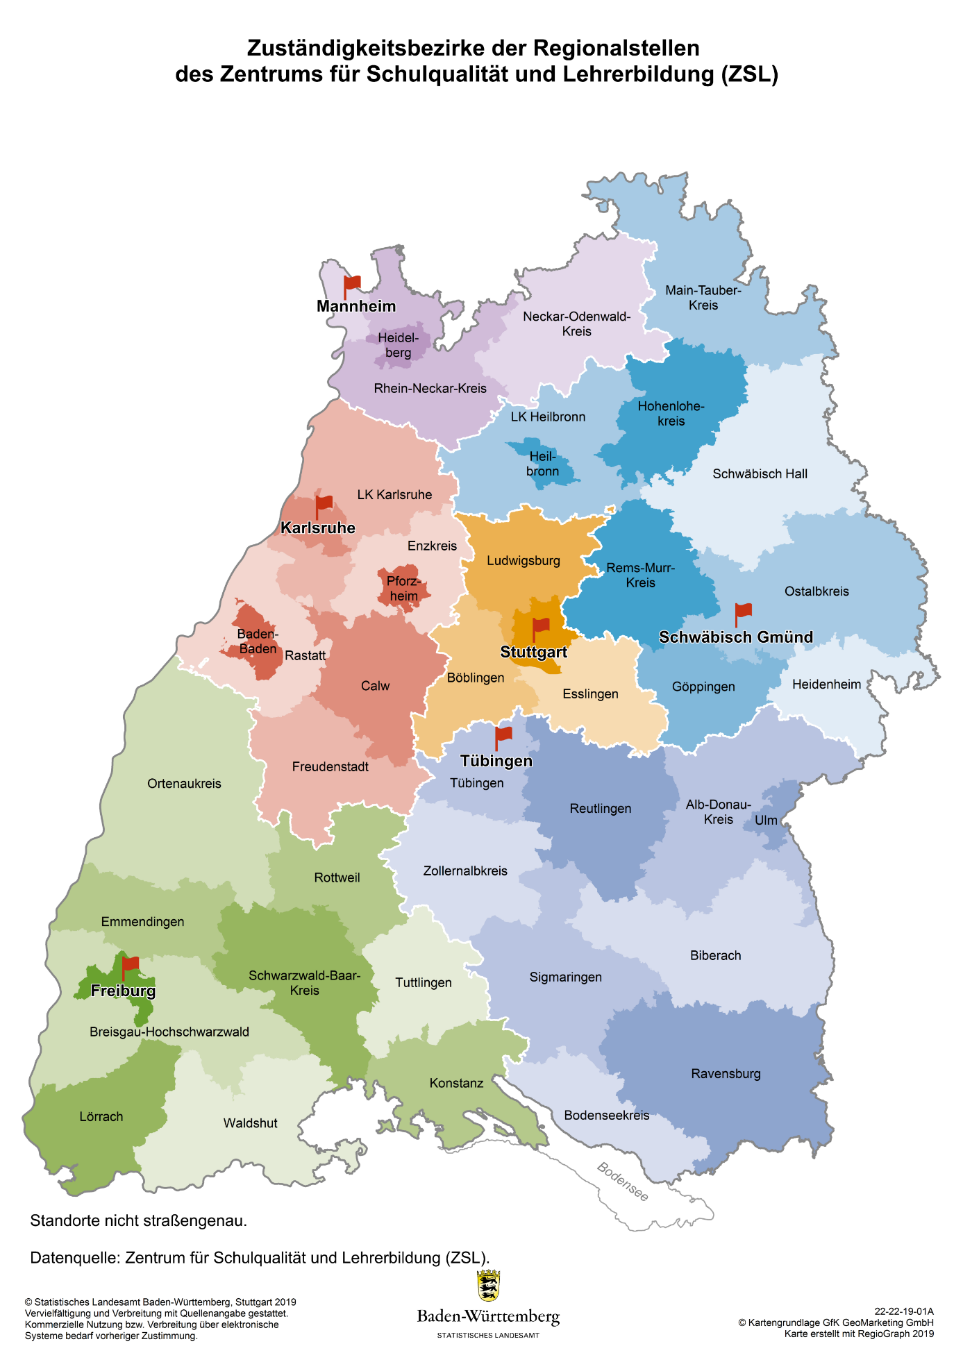 Grafik: Landkarte Baden-Württembergs mit Übersicht der ZSL-Regionalstellen